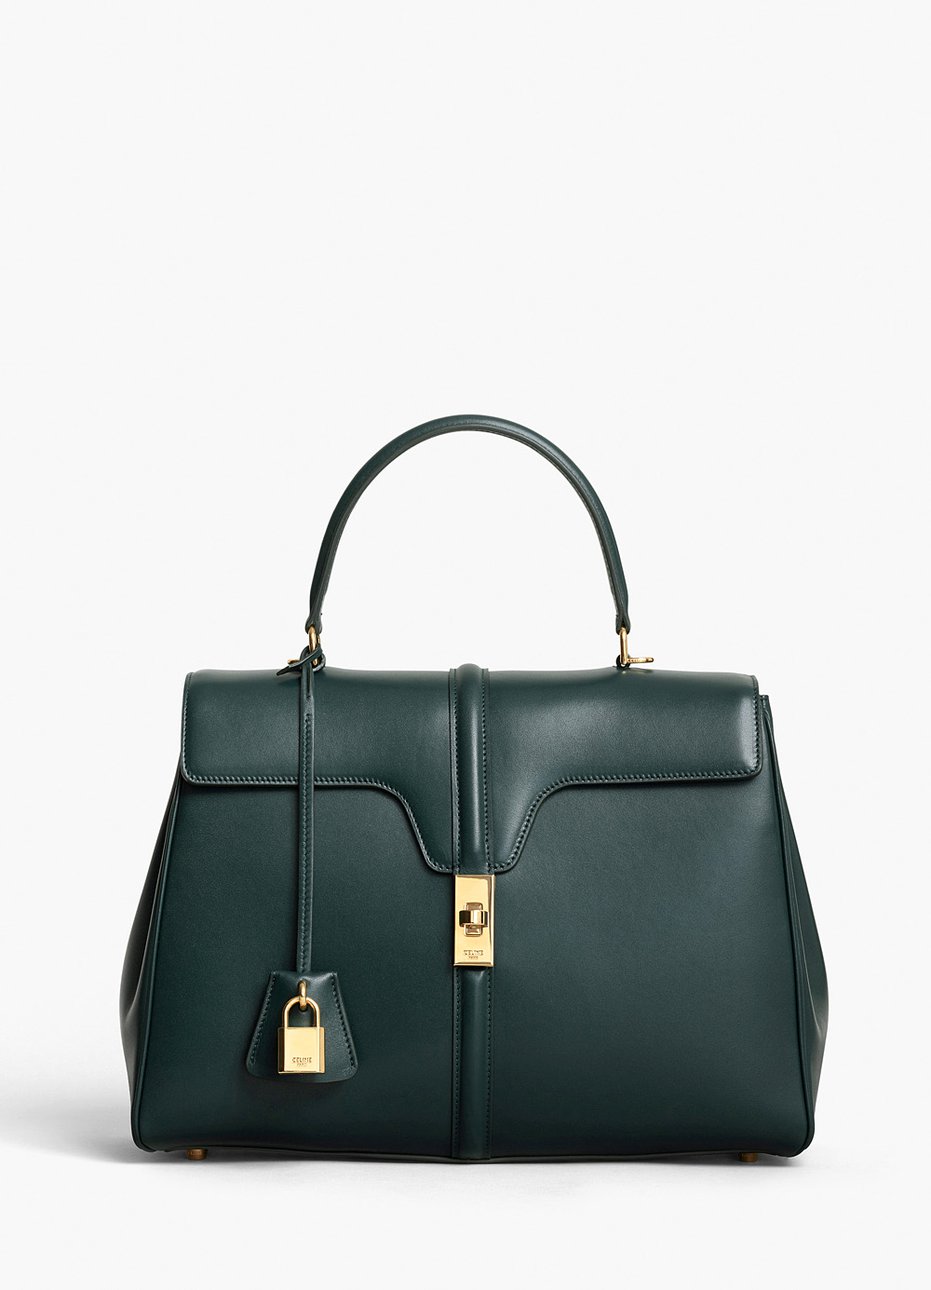 Модель новой сумки Celine “16”, первогодетища Слимана на новом посту, в зеленом цвете, представленная в двух вариантах размера